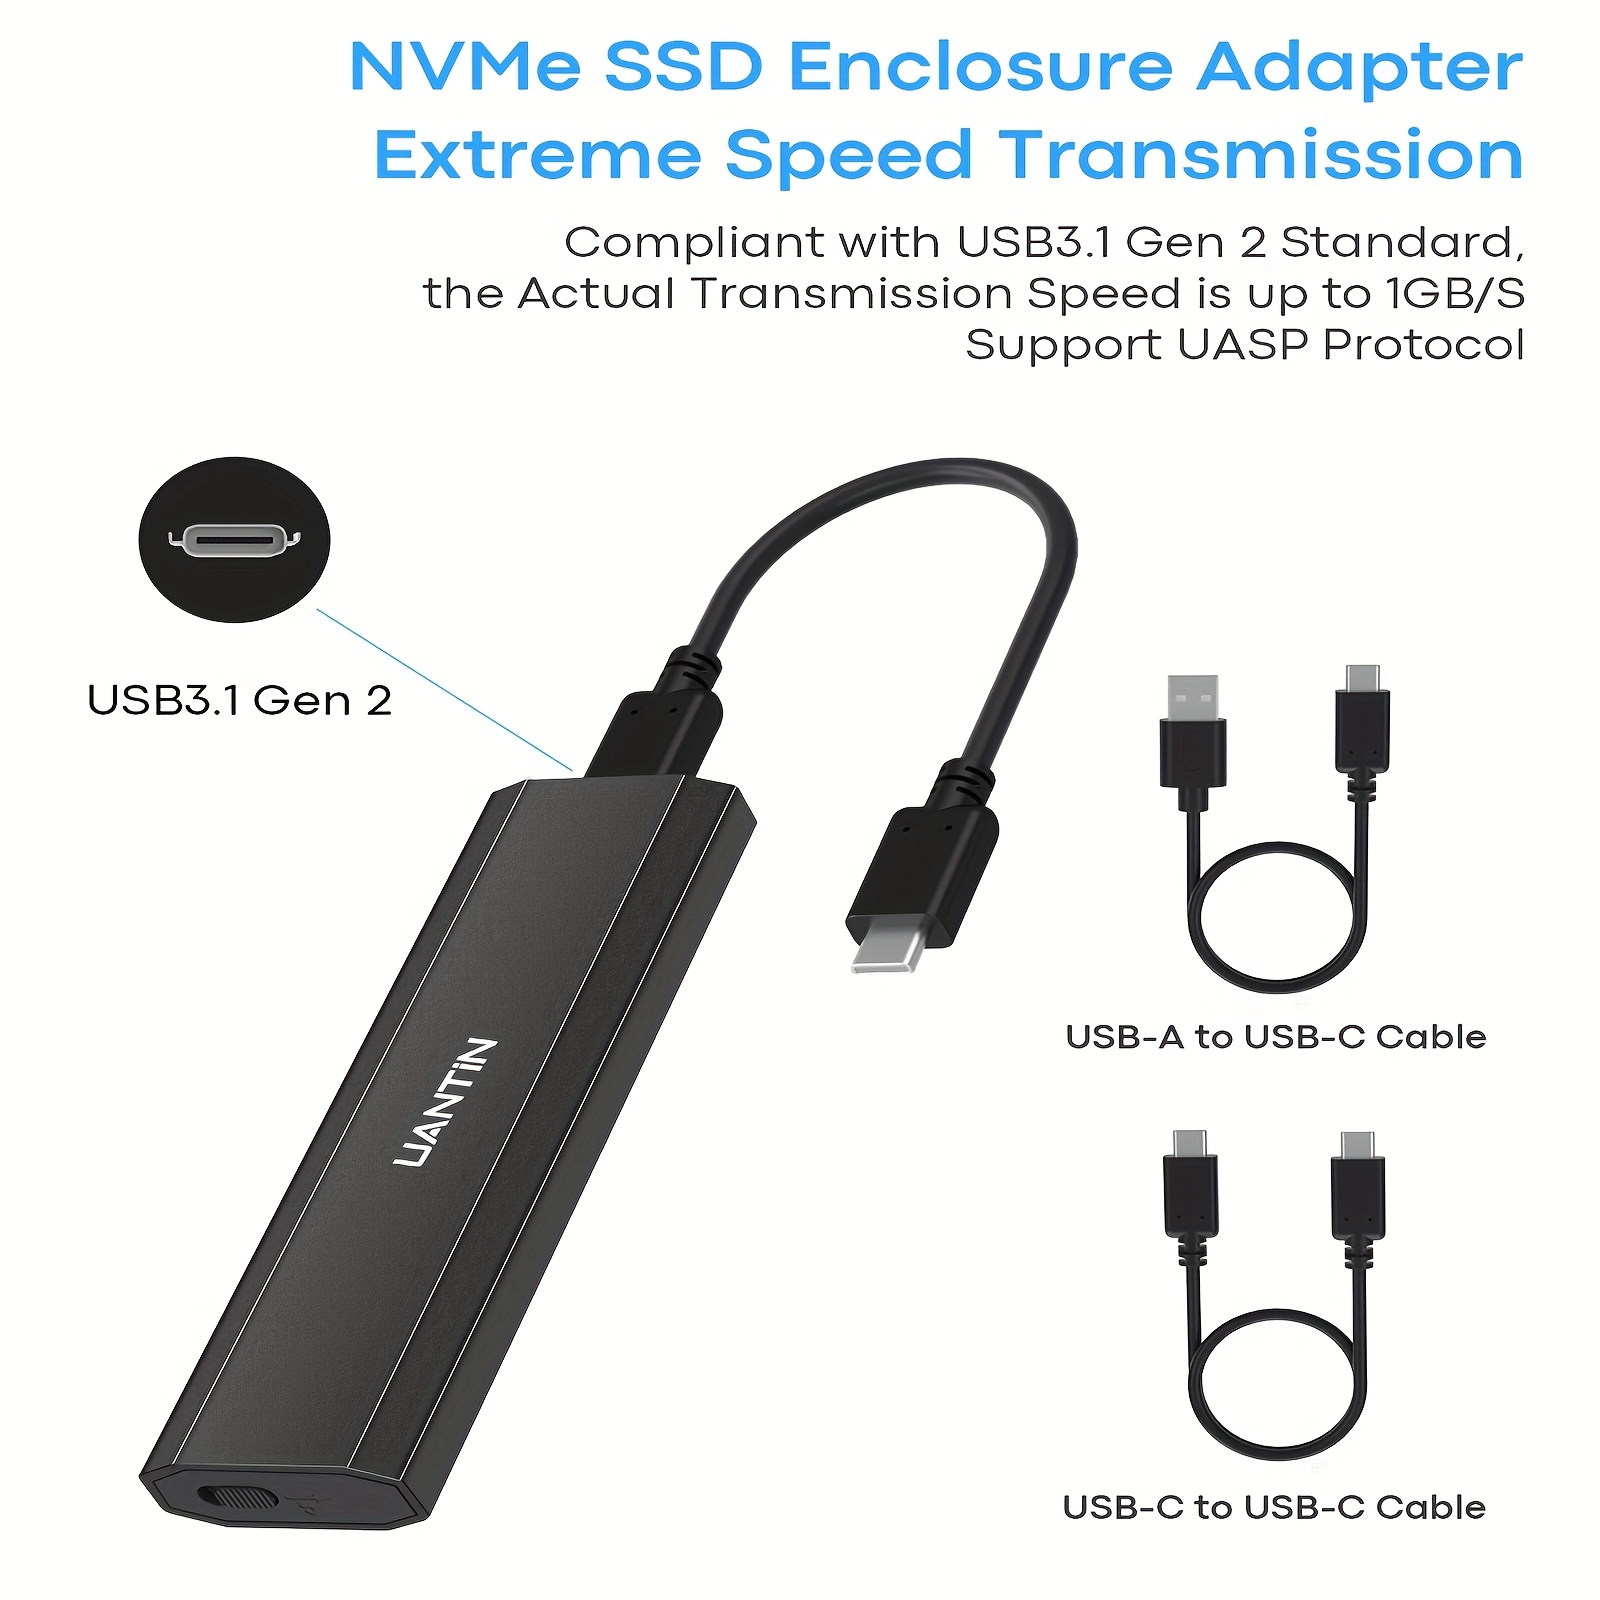 M.2 NVMe USB-C SSD Enclosure, aluminium, USB 3.2 Gen2